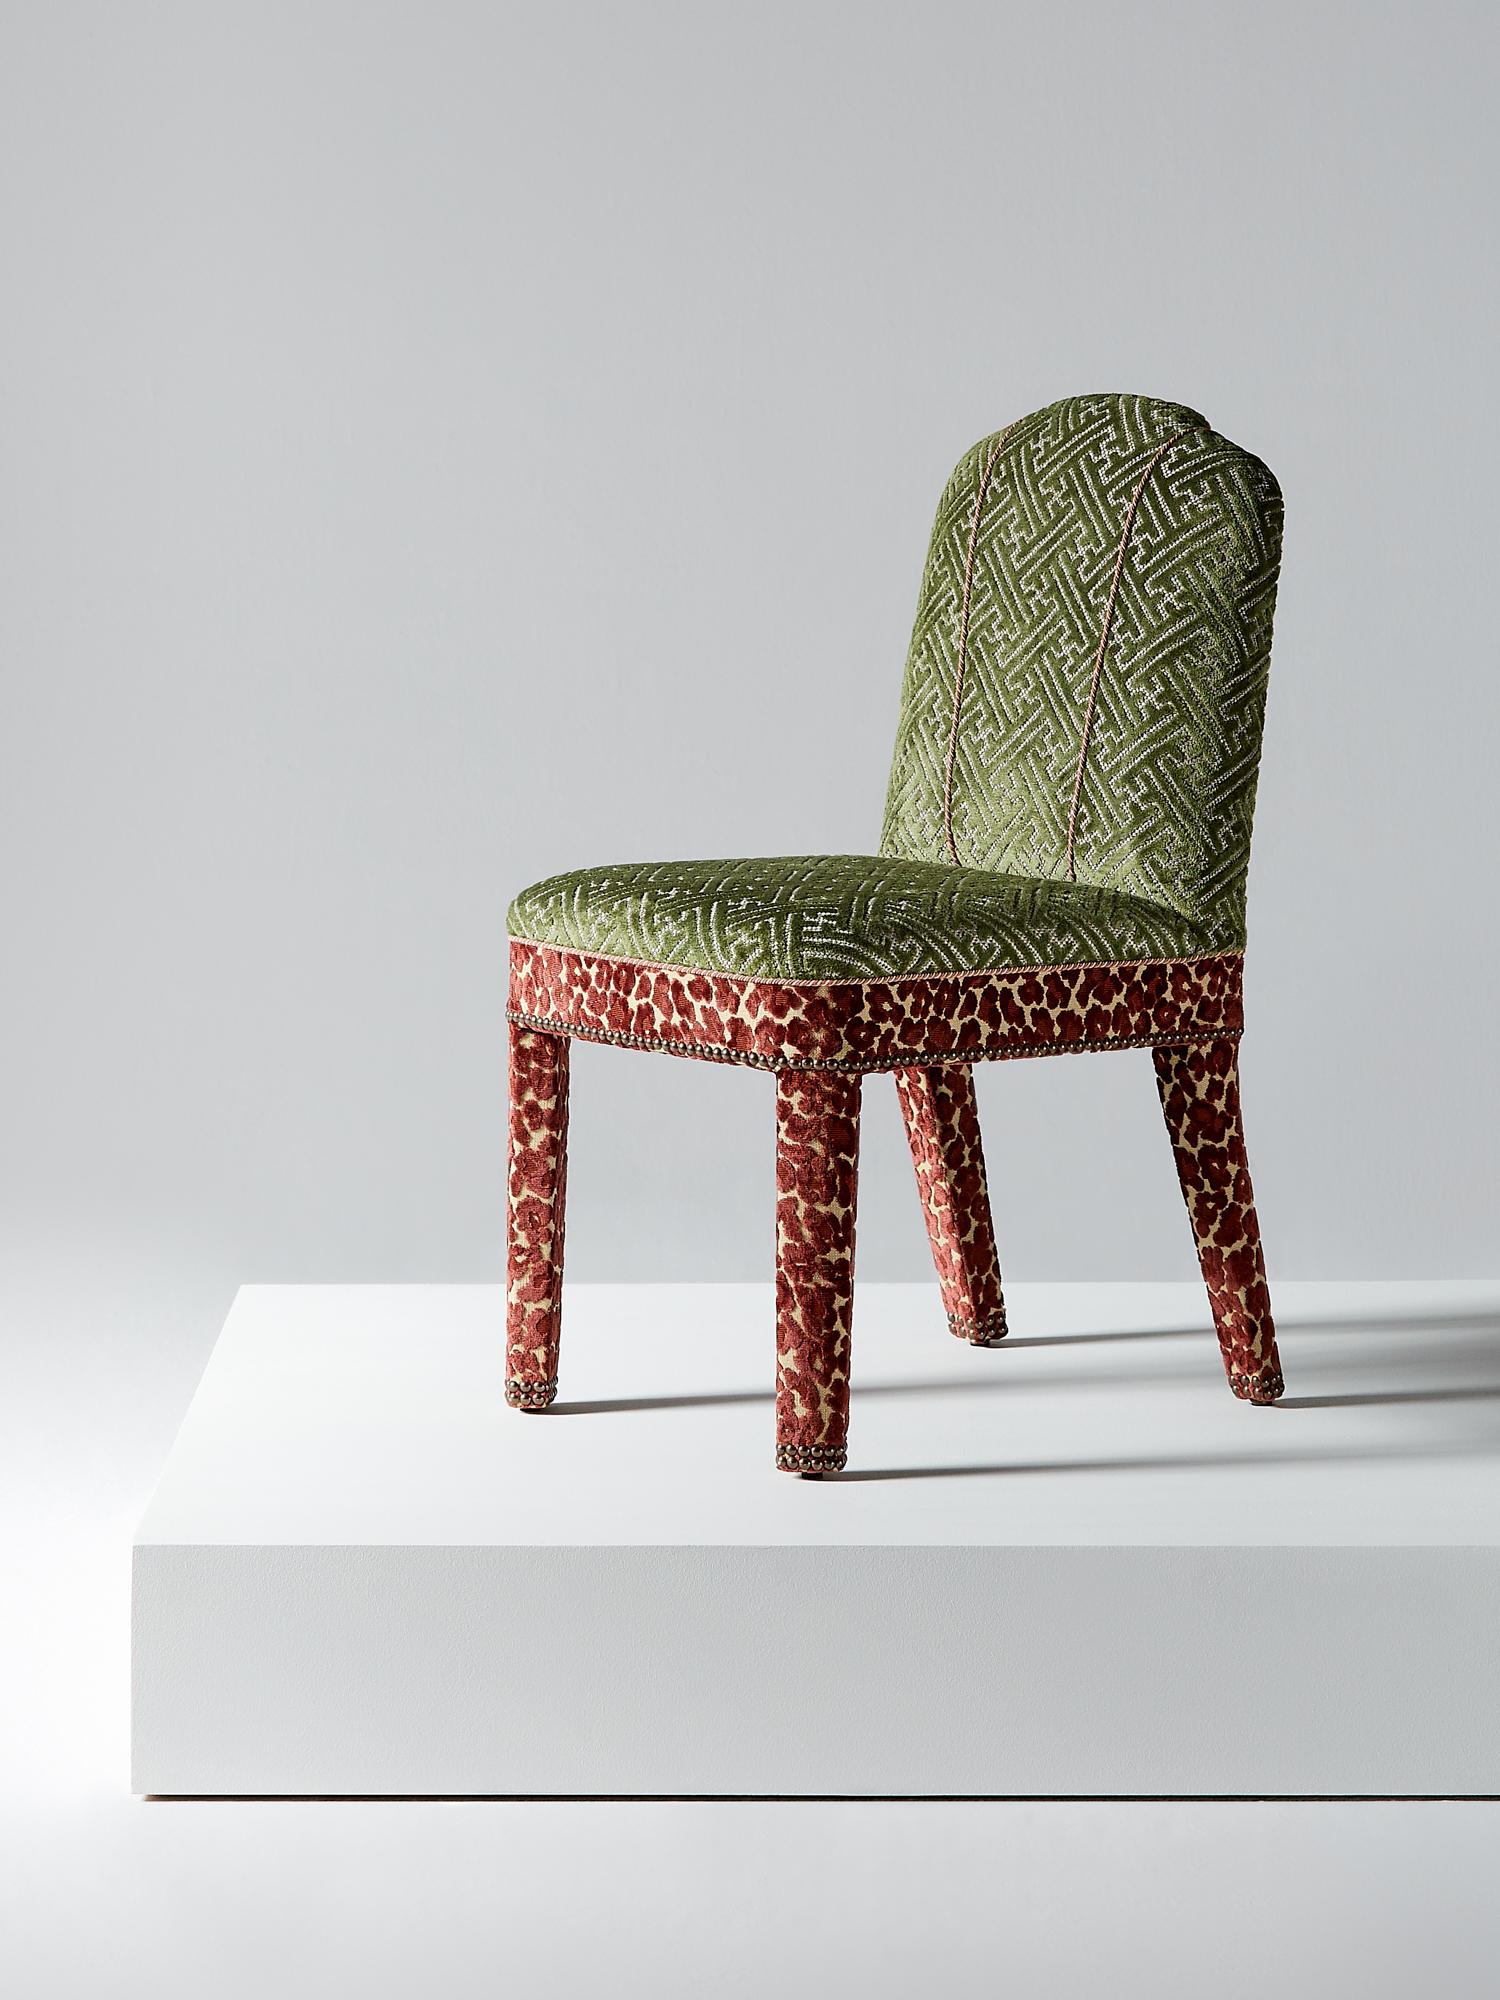 And Objects, studio de design de produits fondé par Martin Brudnizki et Nick Jeanes et basé à Londres.

La chaise de salle à manger Abbas est une version contemporaine de la chaise de salle à manger rembourrée classique. Elle soutient parfaitement